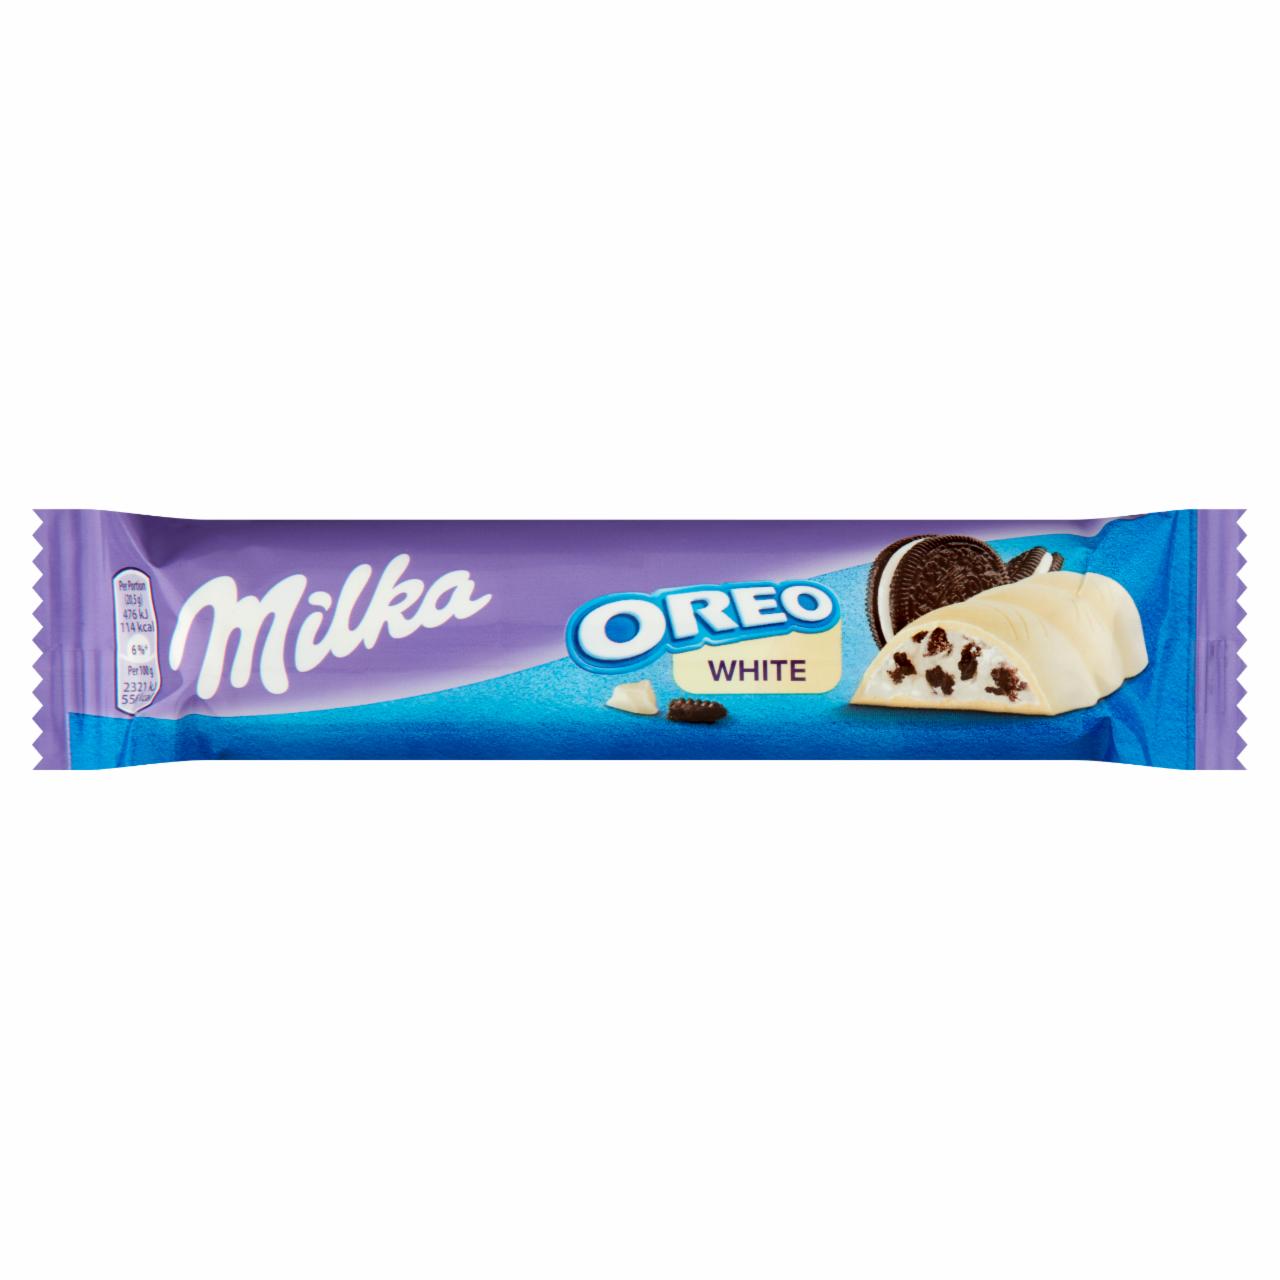 Zdjęcia - Biała czekolada Oreo White Milka